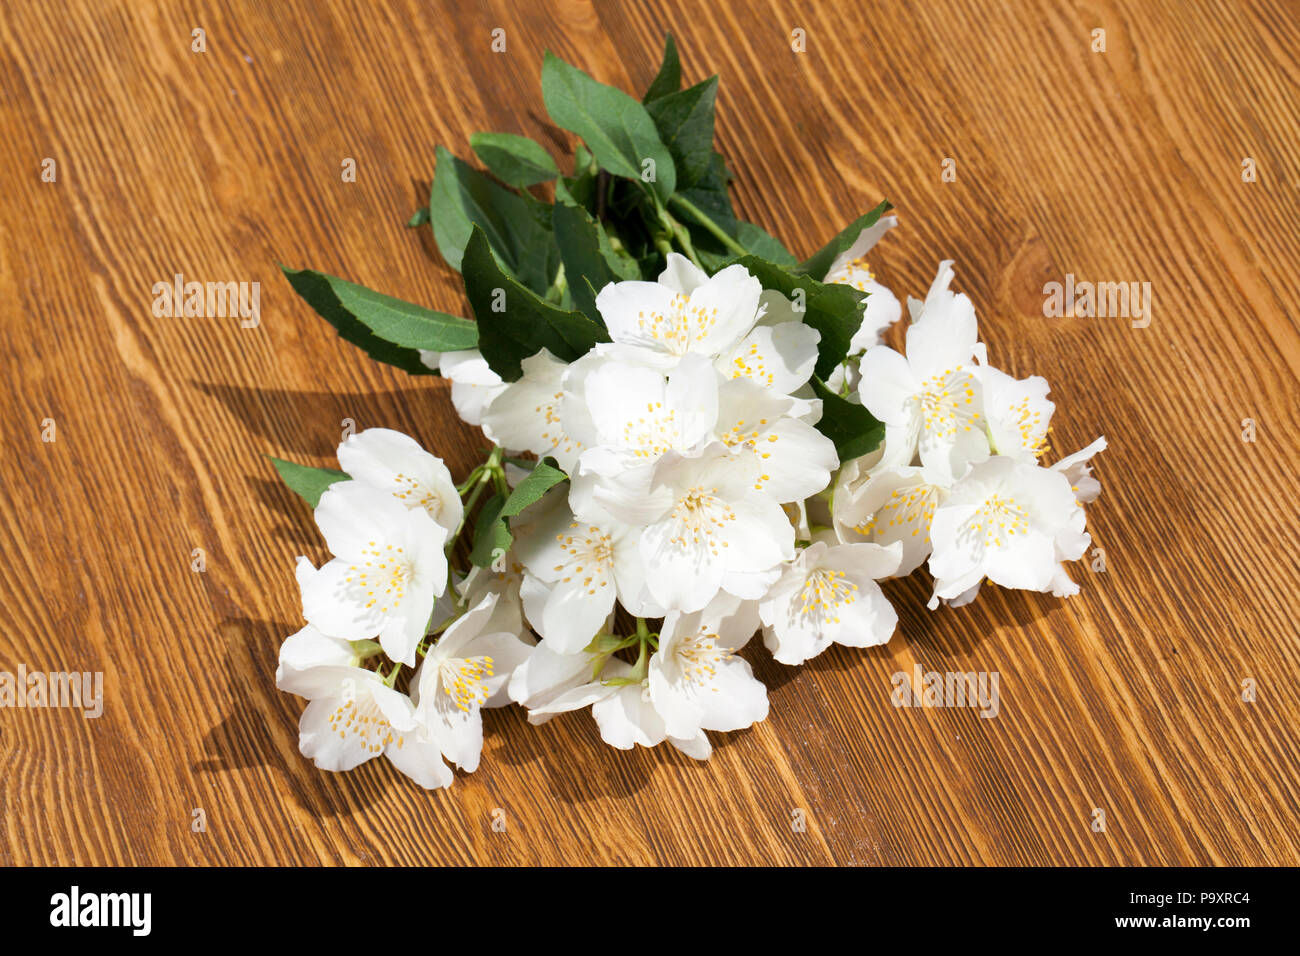 Odeur agréable fragrantly fleurs de jasmin, empilés sur une planche en bois, le ressort Banque D'Images